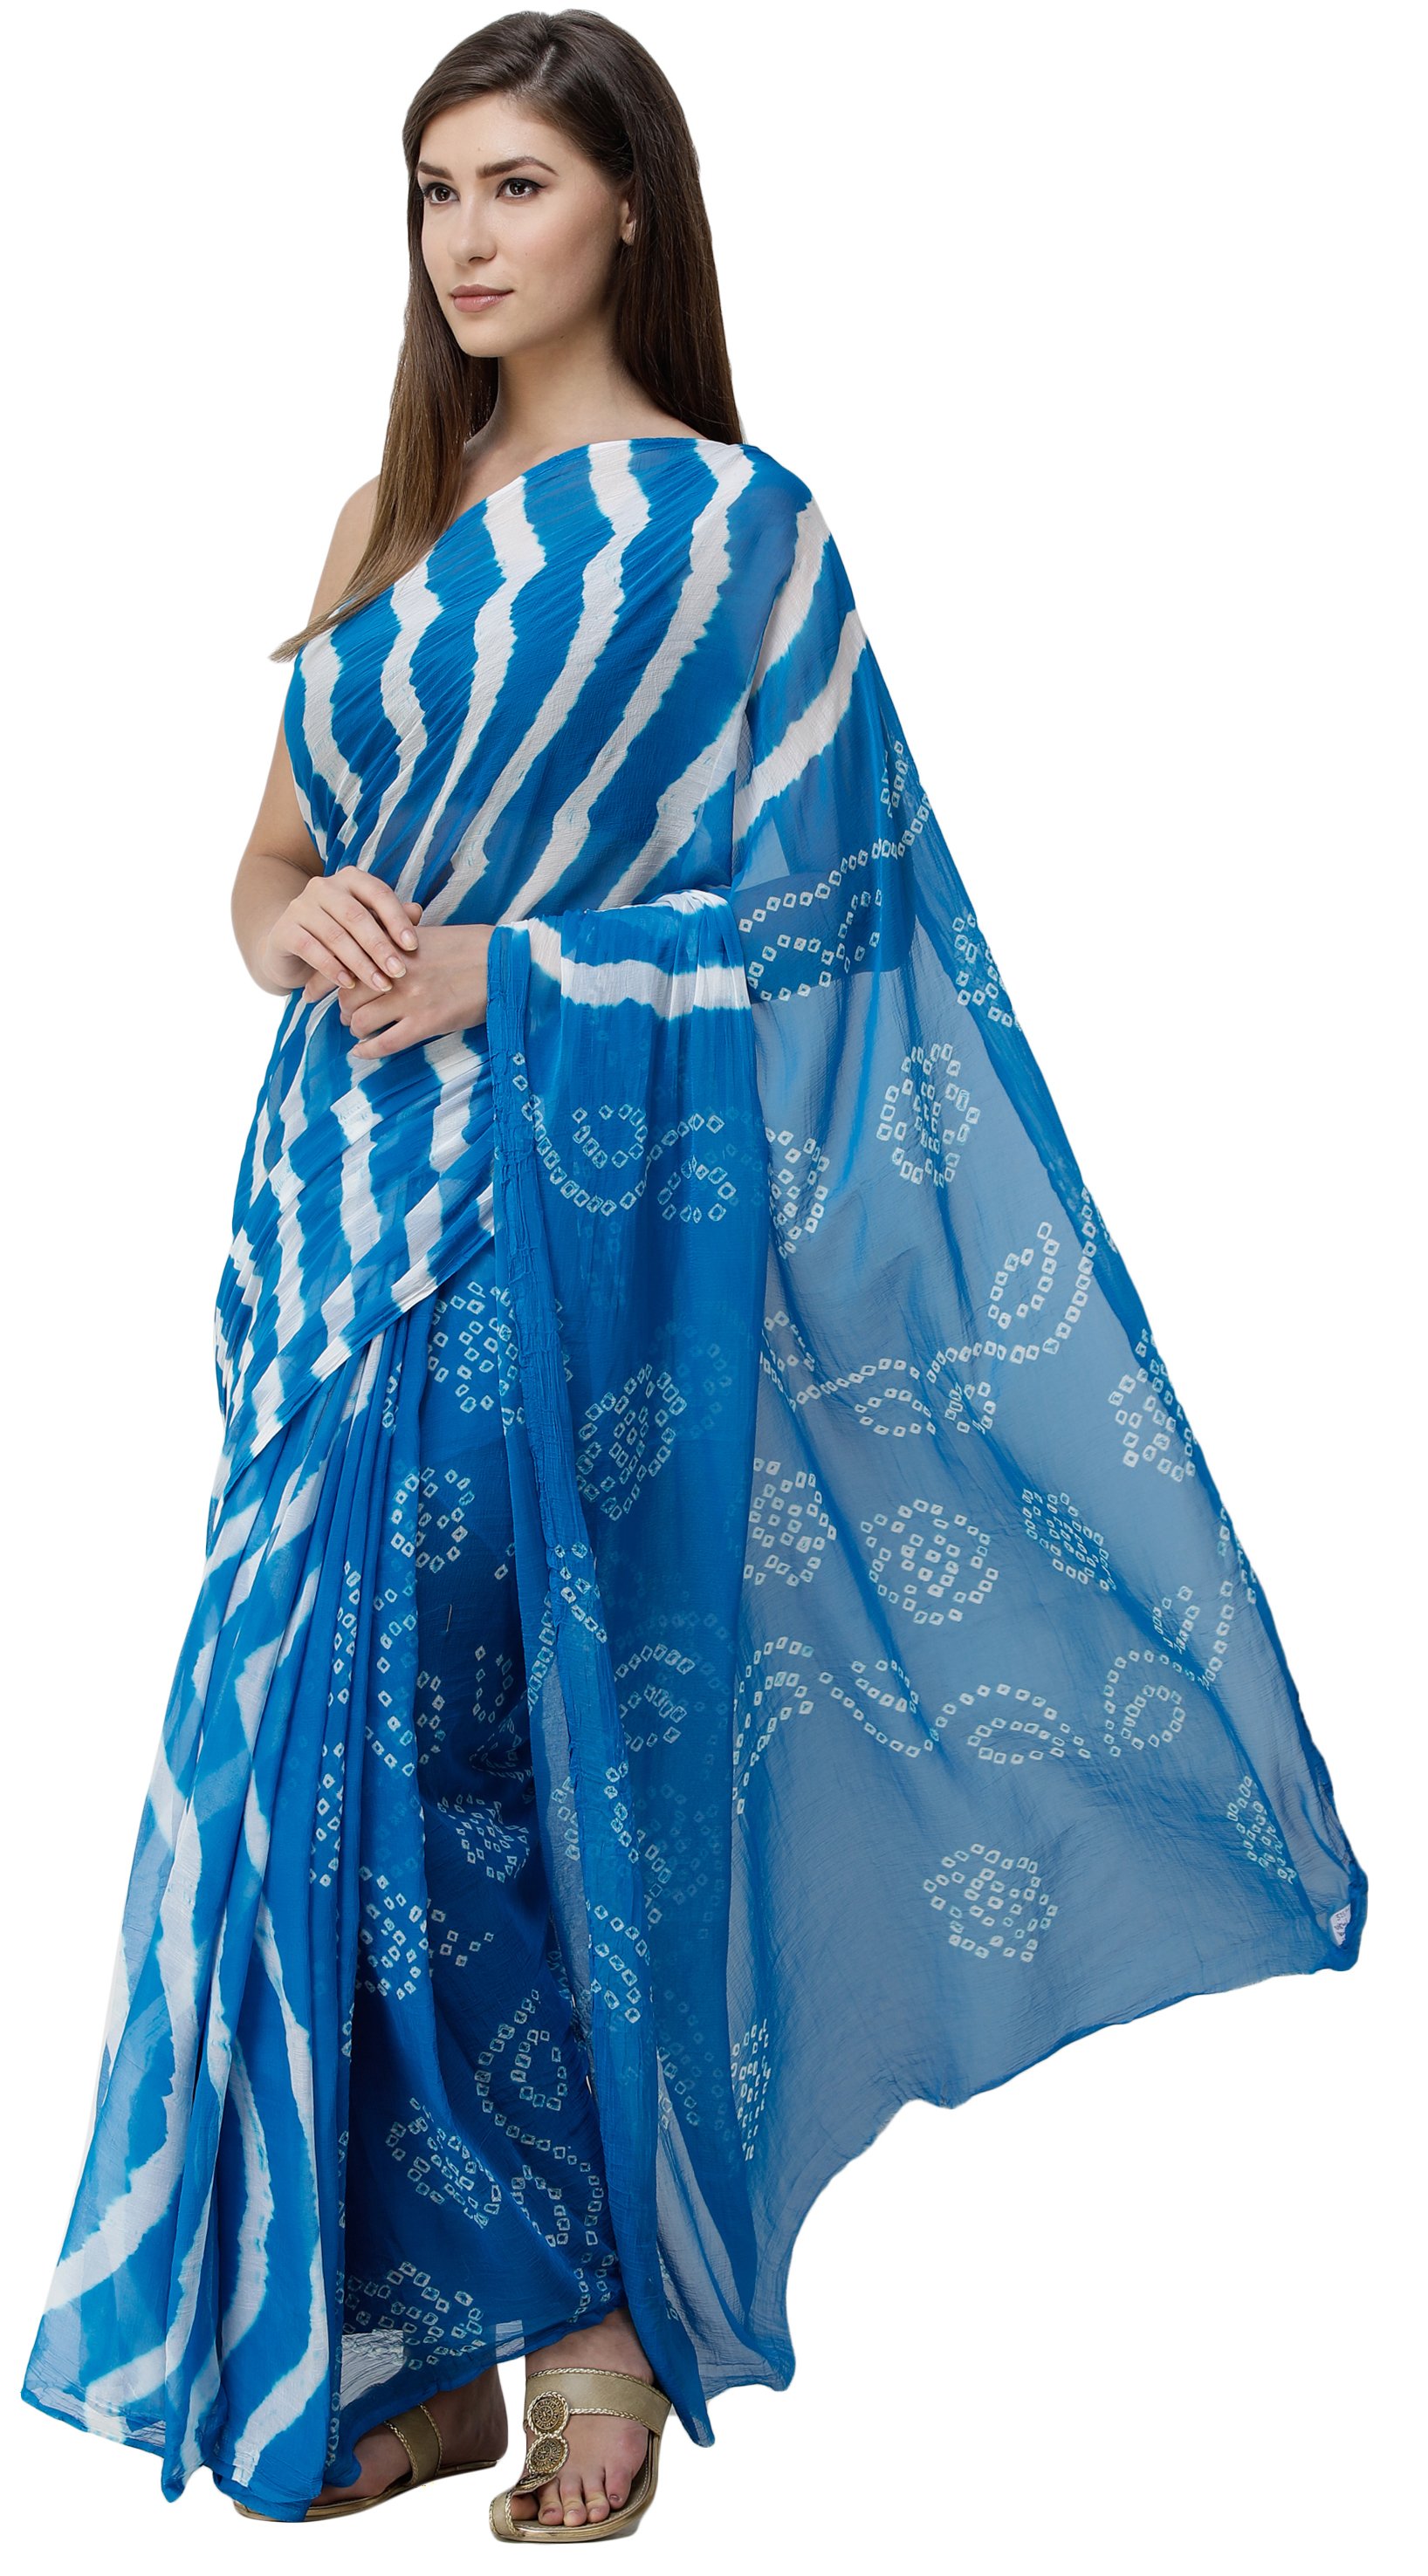 Red Silk Tie-Dye Bandhani Banarasi Saree Set Design by Geroo Jaipur at  Pernia's Pop Up Shop 2023